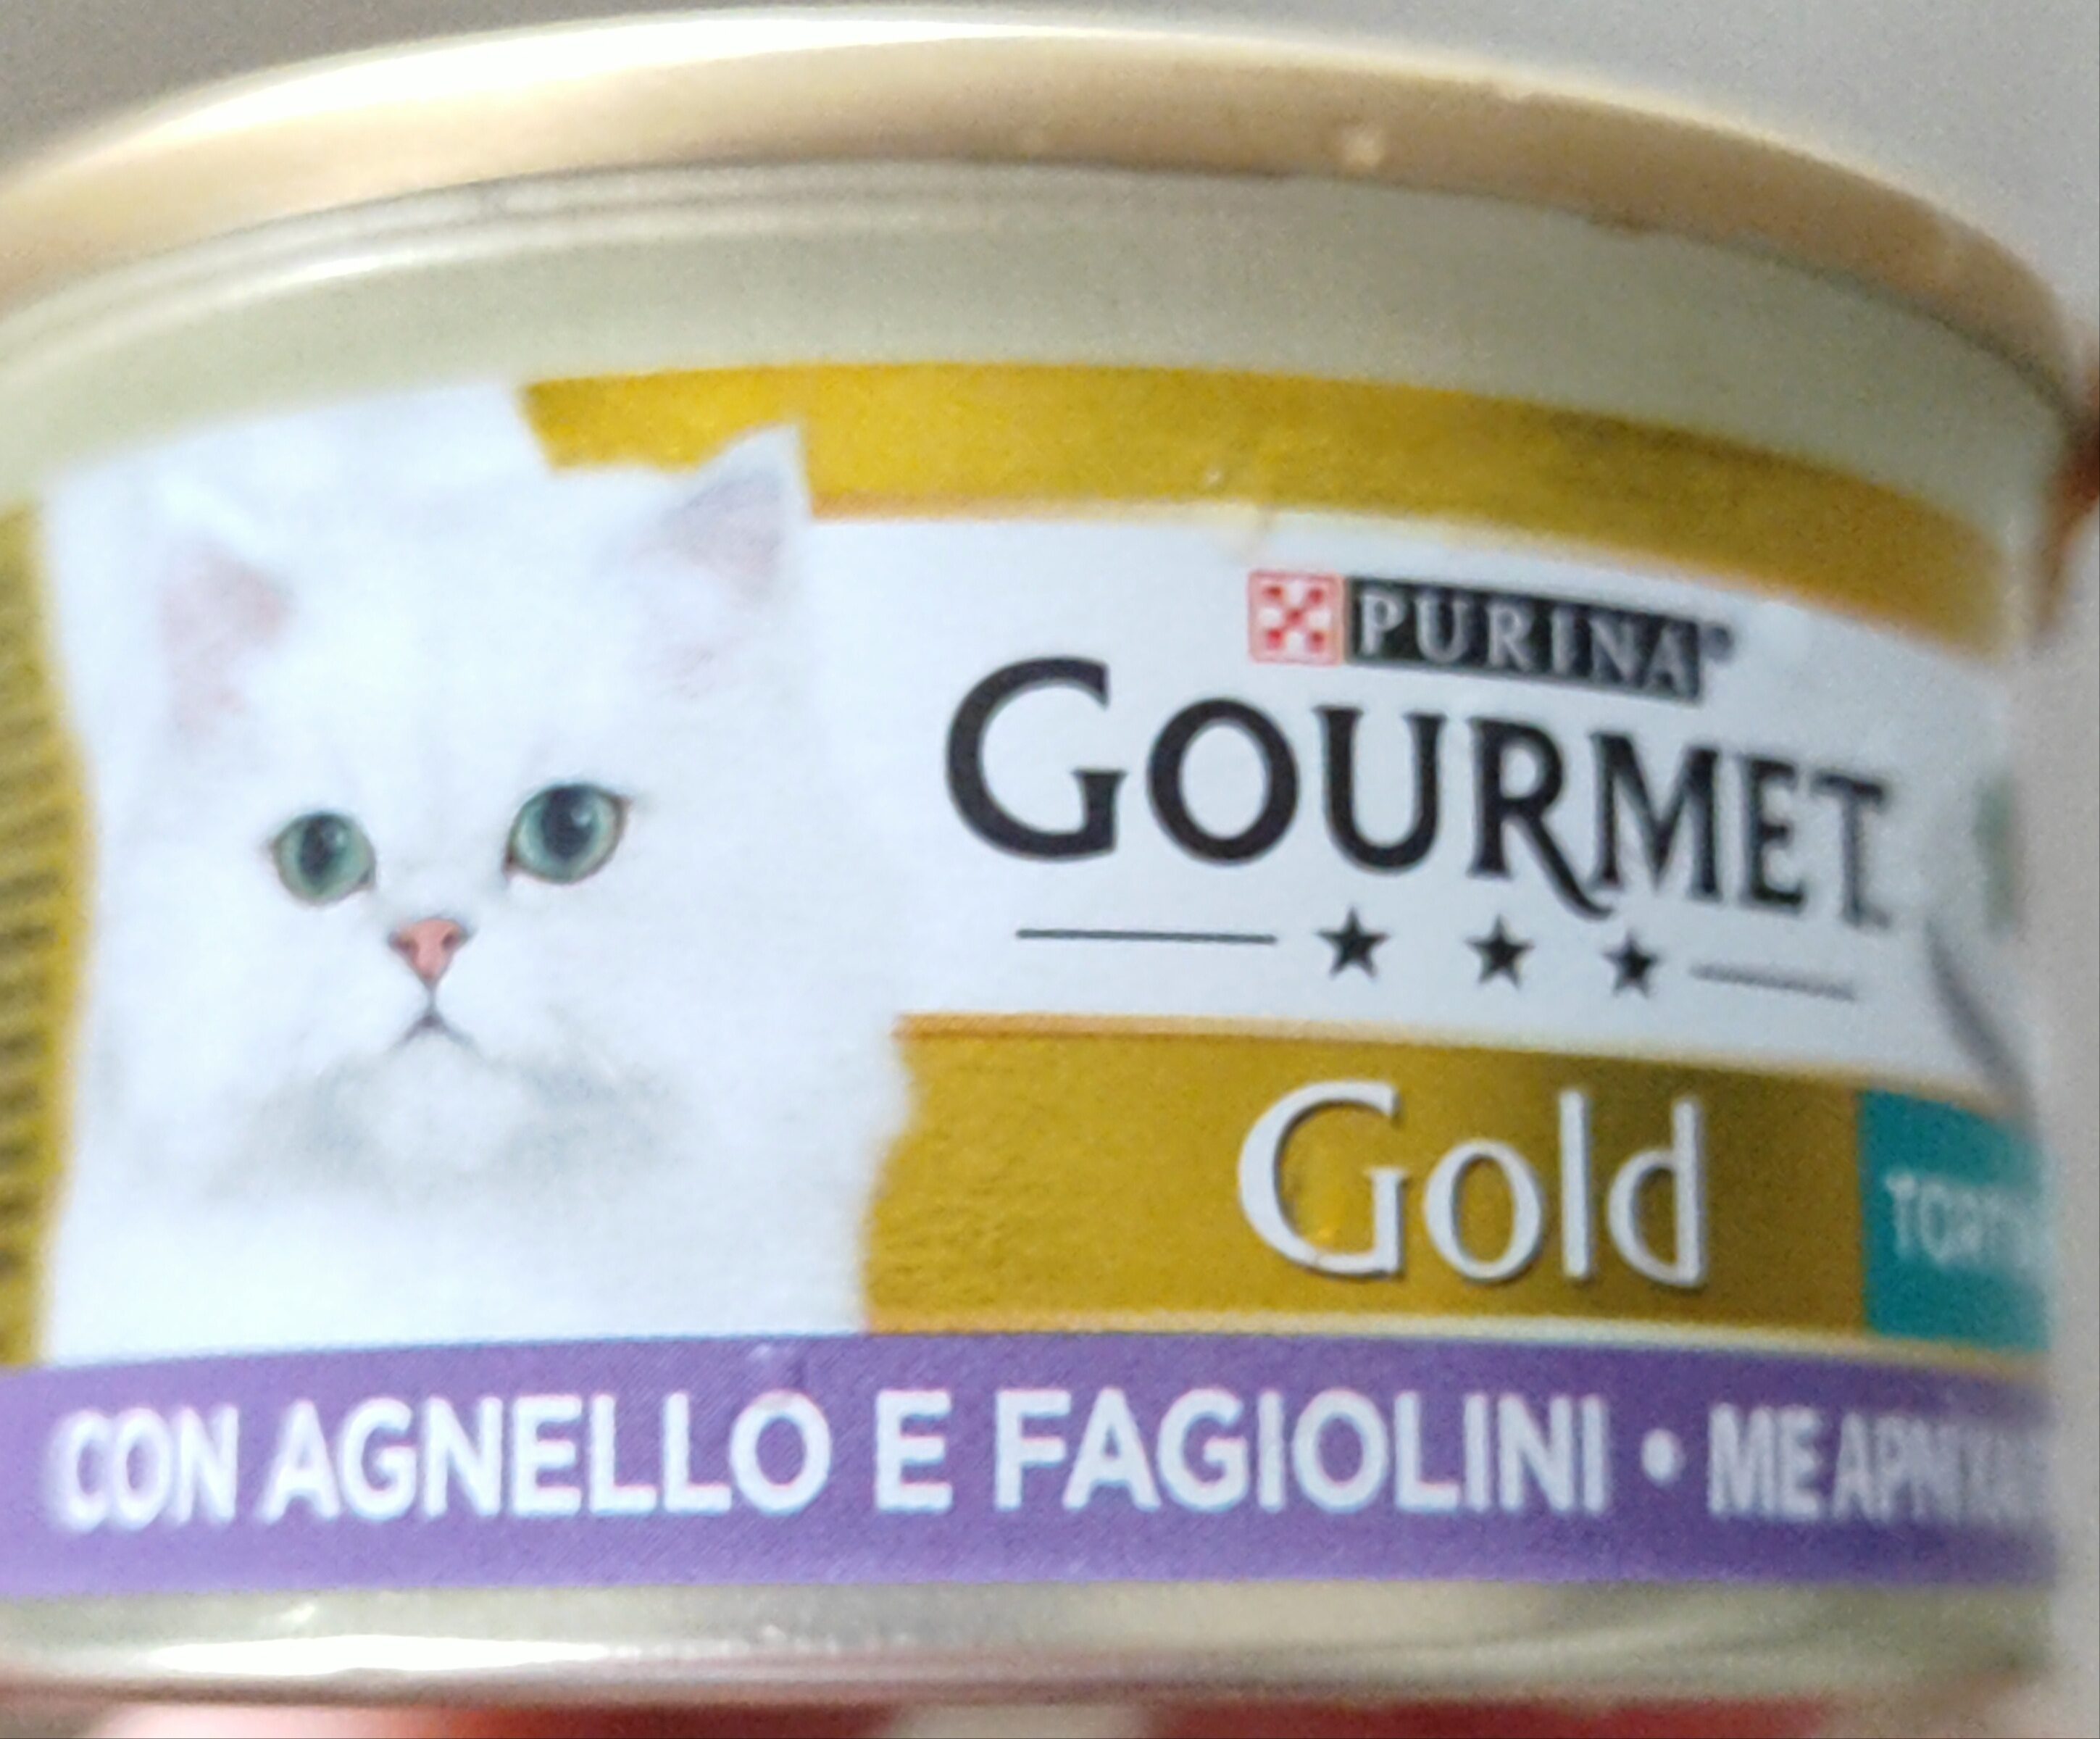 Gold con agnello e fagiolini - Product - it